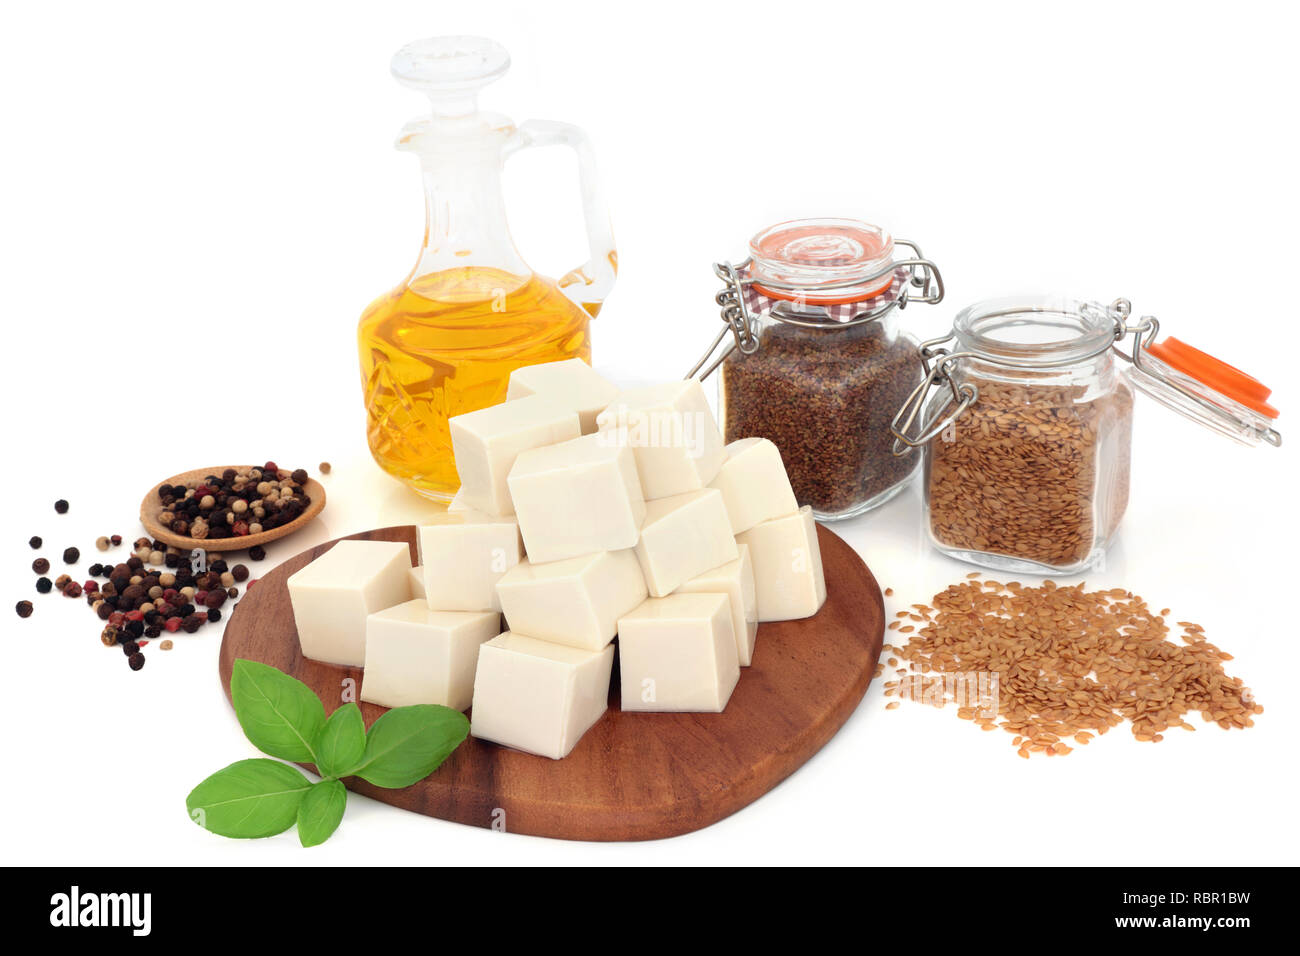 Vegan aliments de santé au tofu pâte de soja, graines de lin, huile d'olive, basilic poivre et d'herbes sur fond blanc. Riche en protéines et d'oméga 3. Banque D'Images